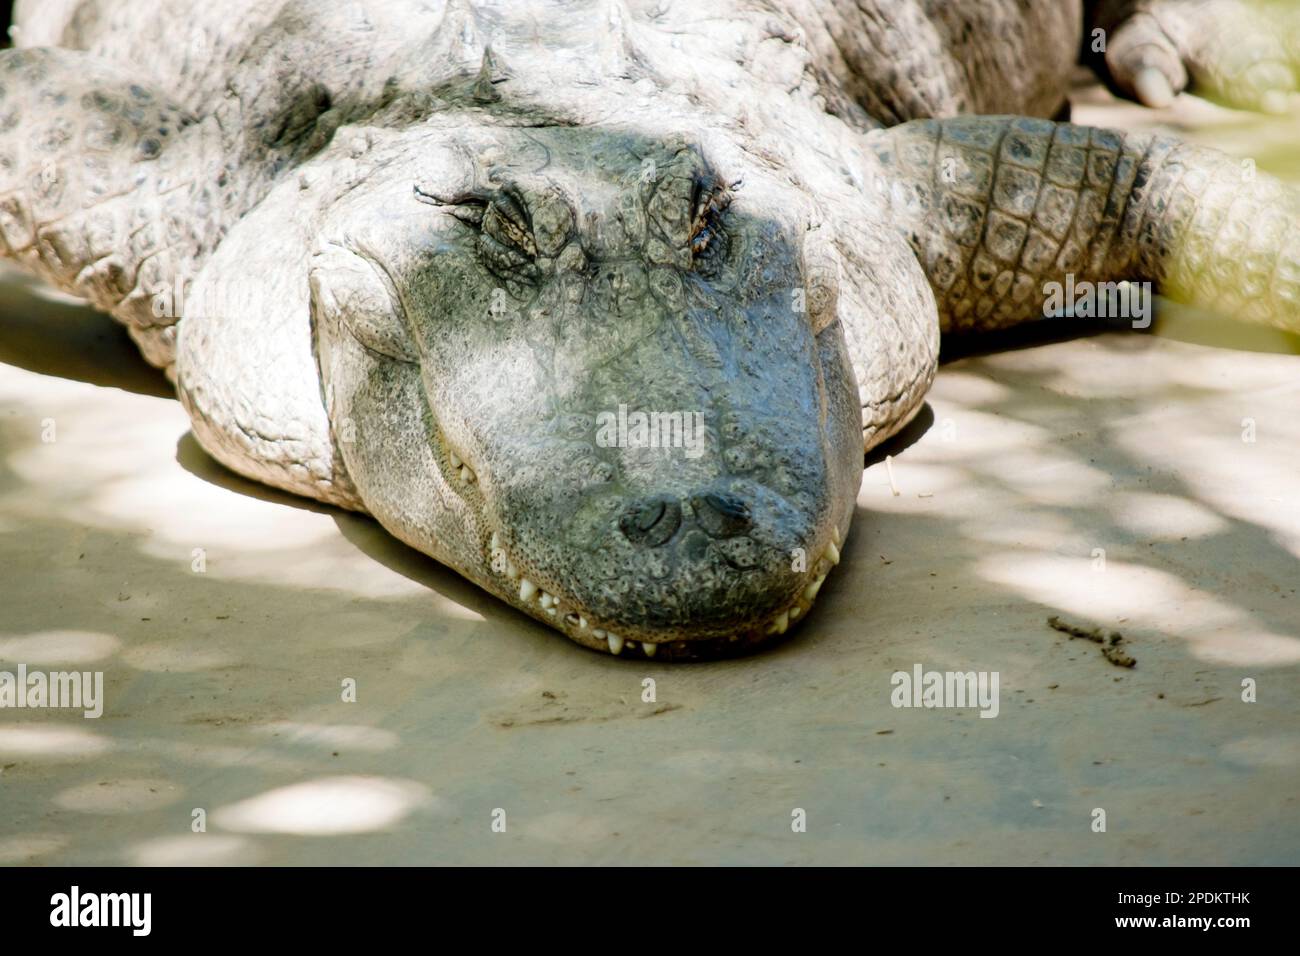 Alligatoren haben eine lange, abgerundete Schnauze mit nach oben gerichteten Nasenlöchern am Ende; dies ermöglicht Atmung, während der Rest des Körpers unter Wasser ist Stockfoto